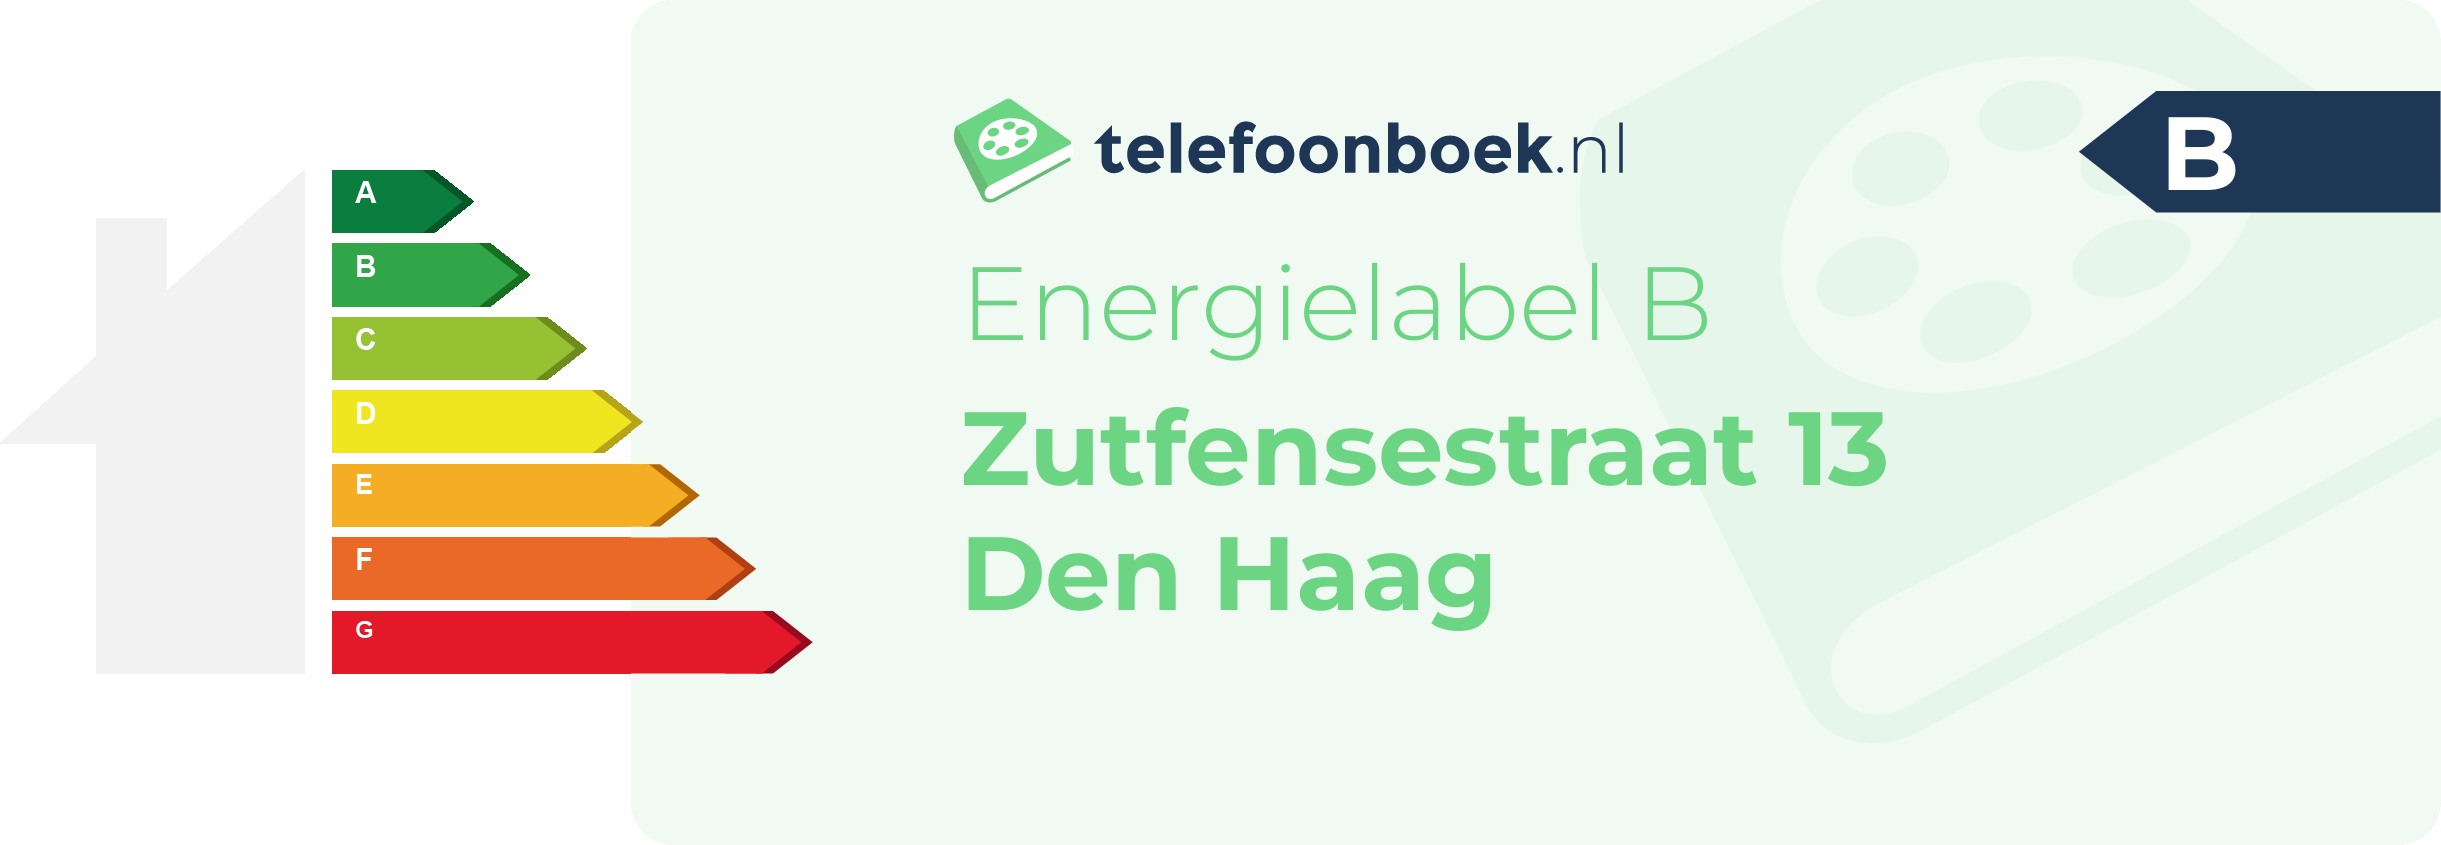 Energielabel Zutfensestraat 13 Den Haag